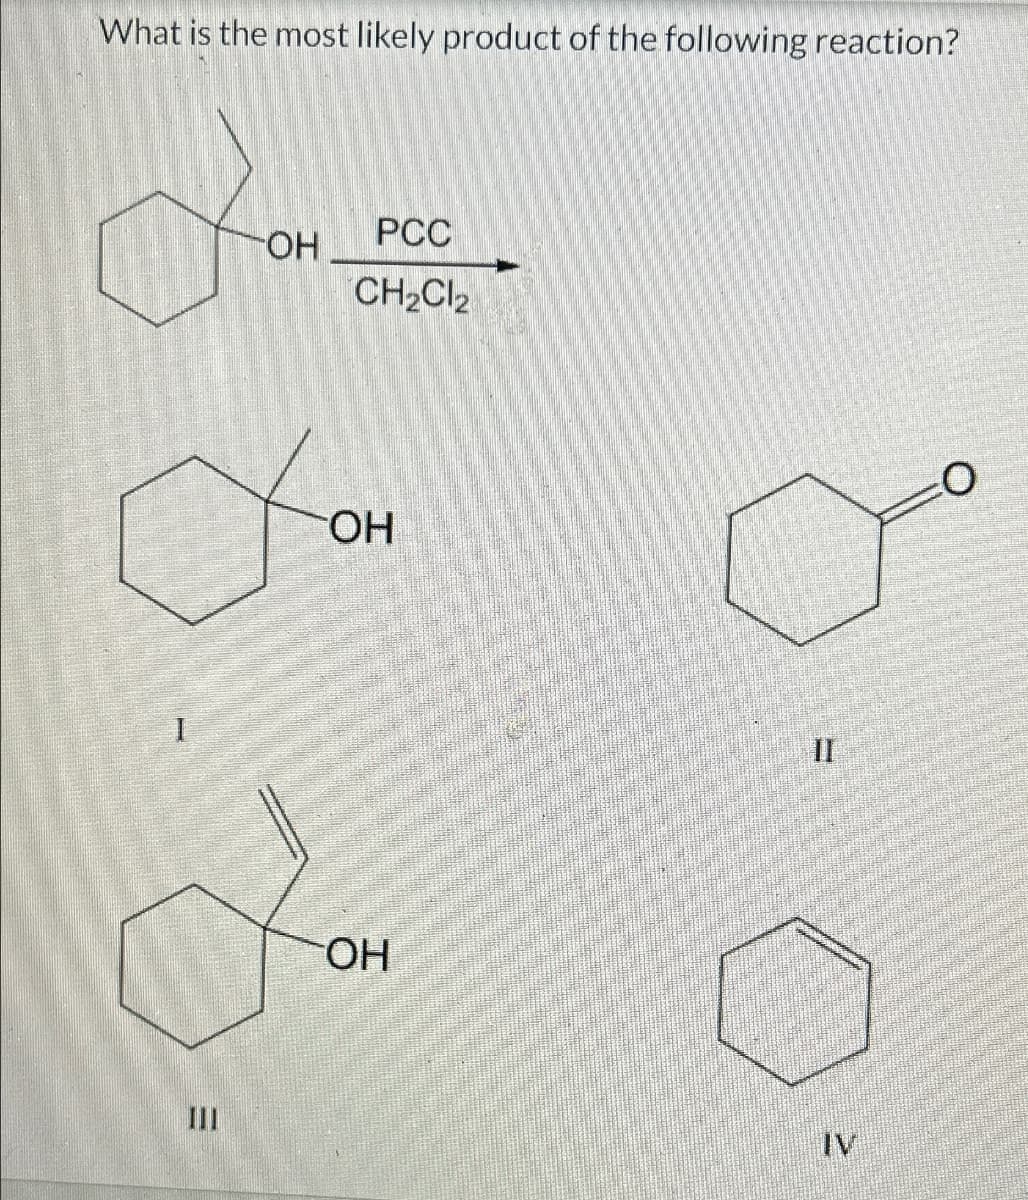 ミ
What is the most likely product of the following reaction?
PCC
OH
CH2Cl2
TOH
OH
IV
II
O